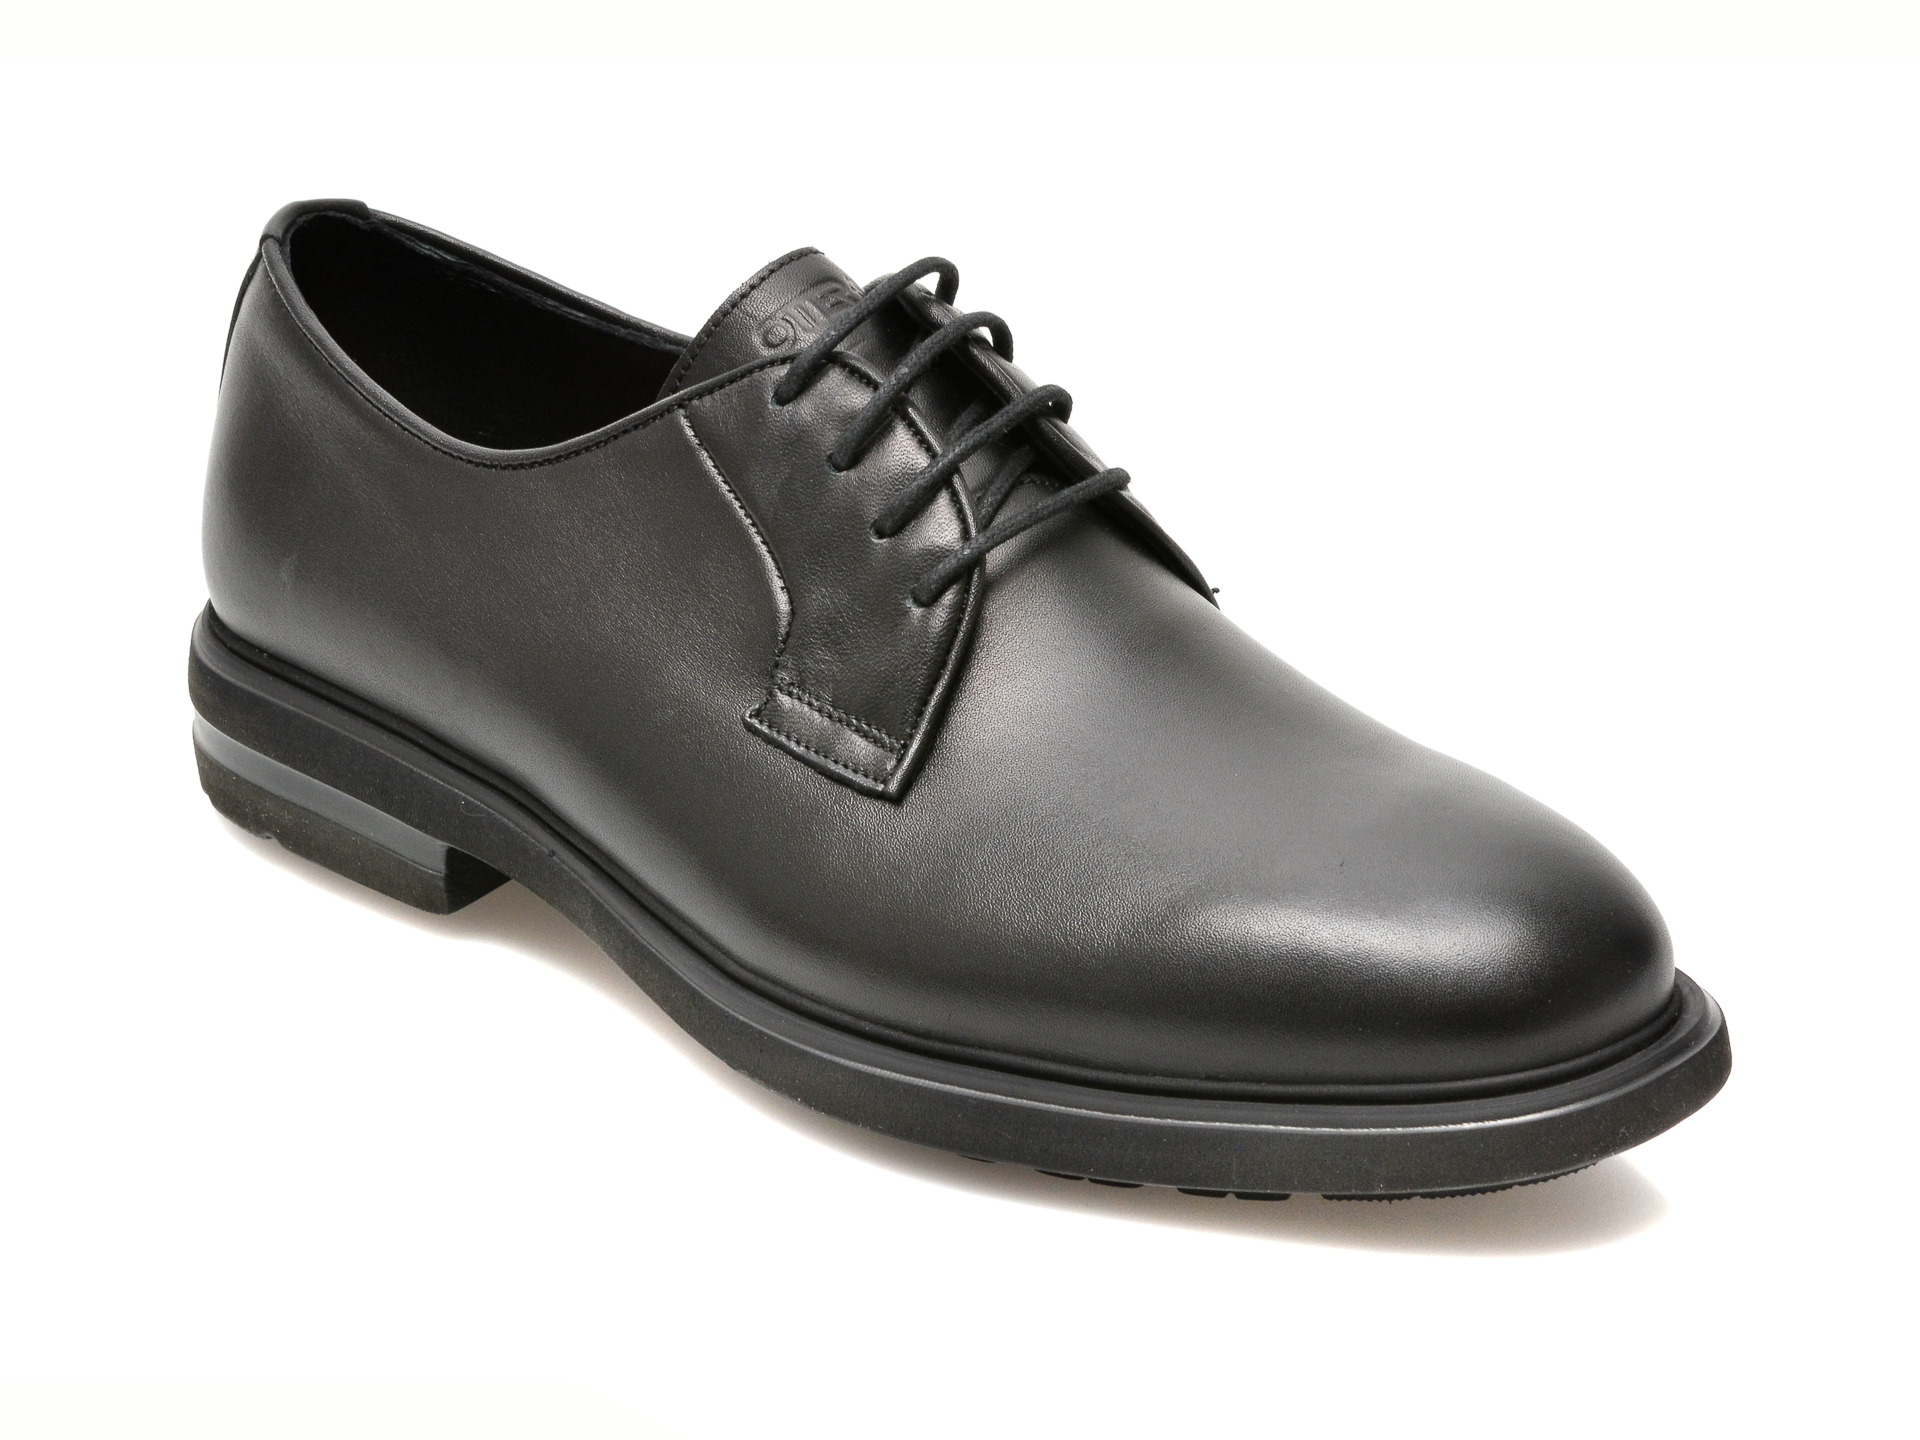 Pantofi OTTER negri, E1801, din piele naturala Otter